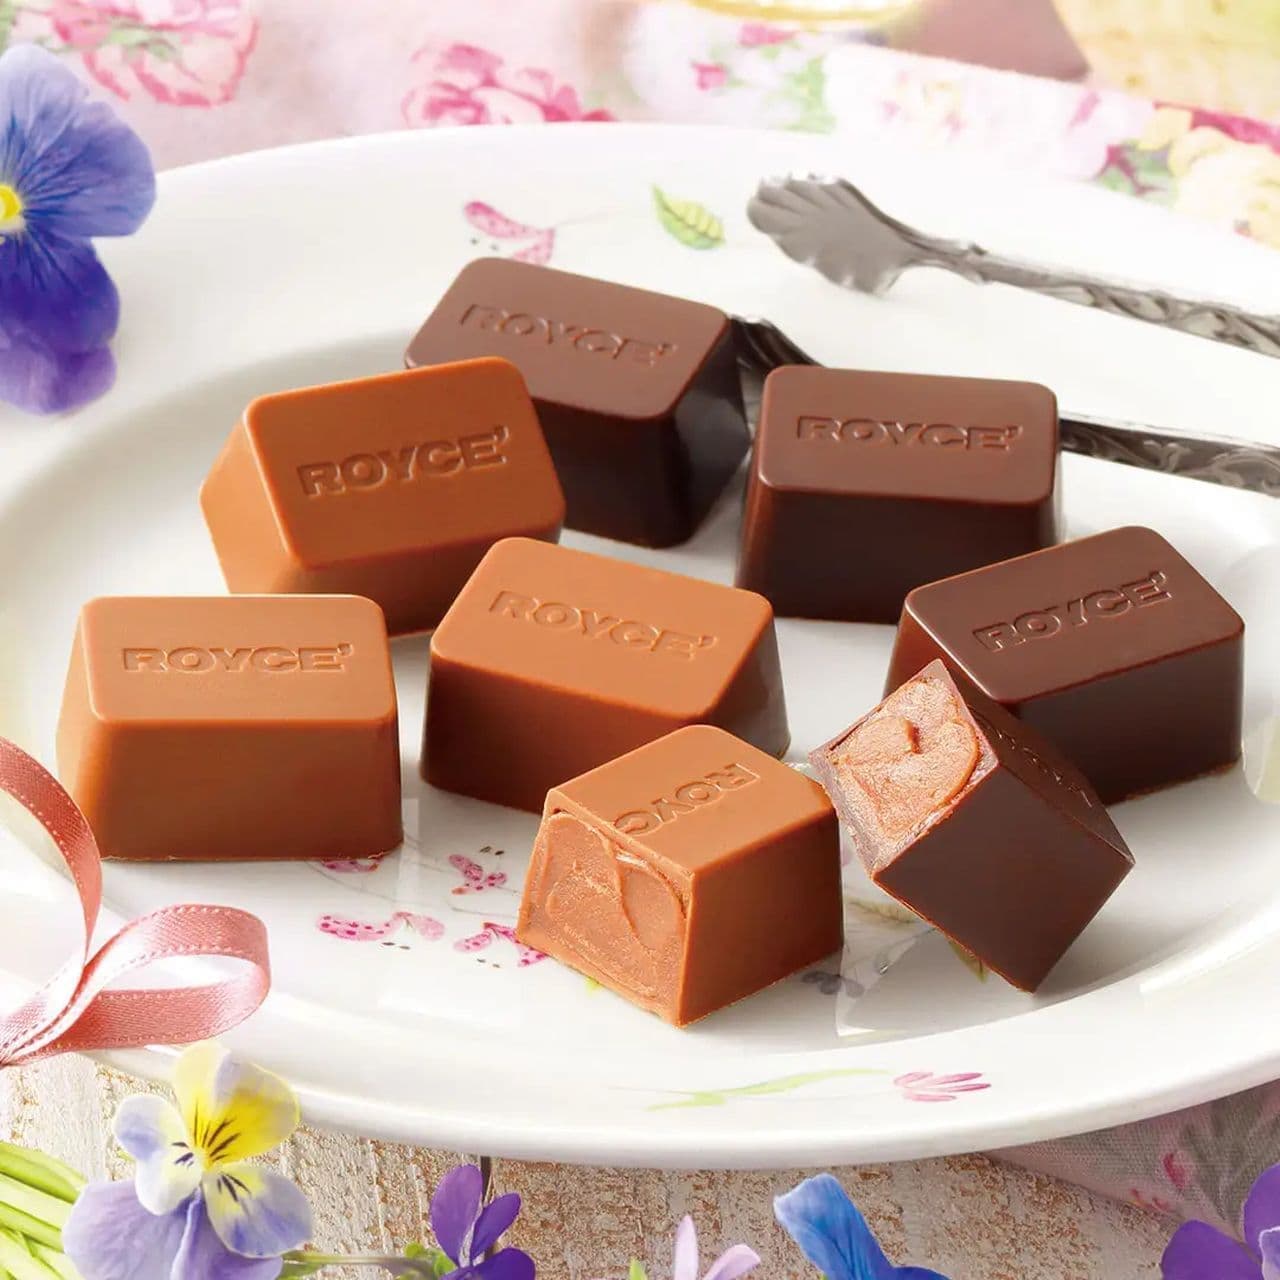 Lloyds "Praline Chocolat [Violet & Gin]".